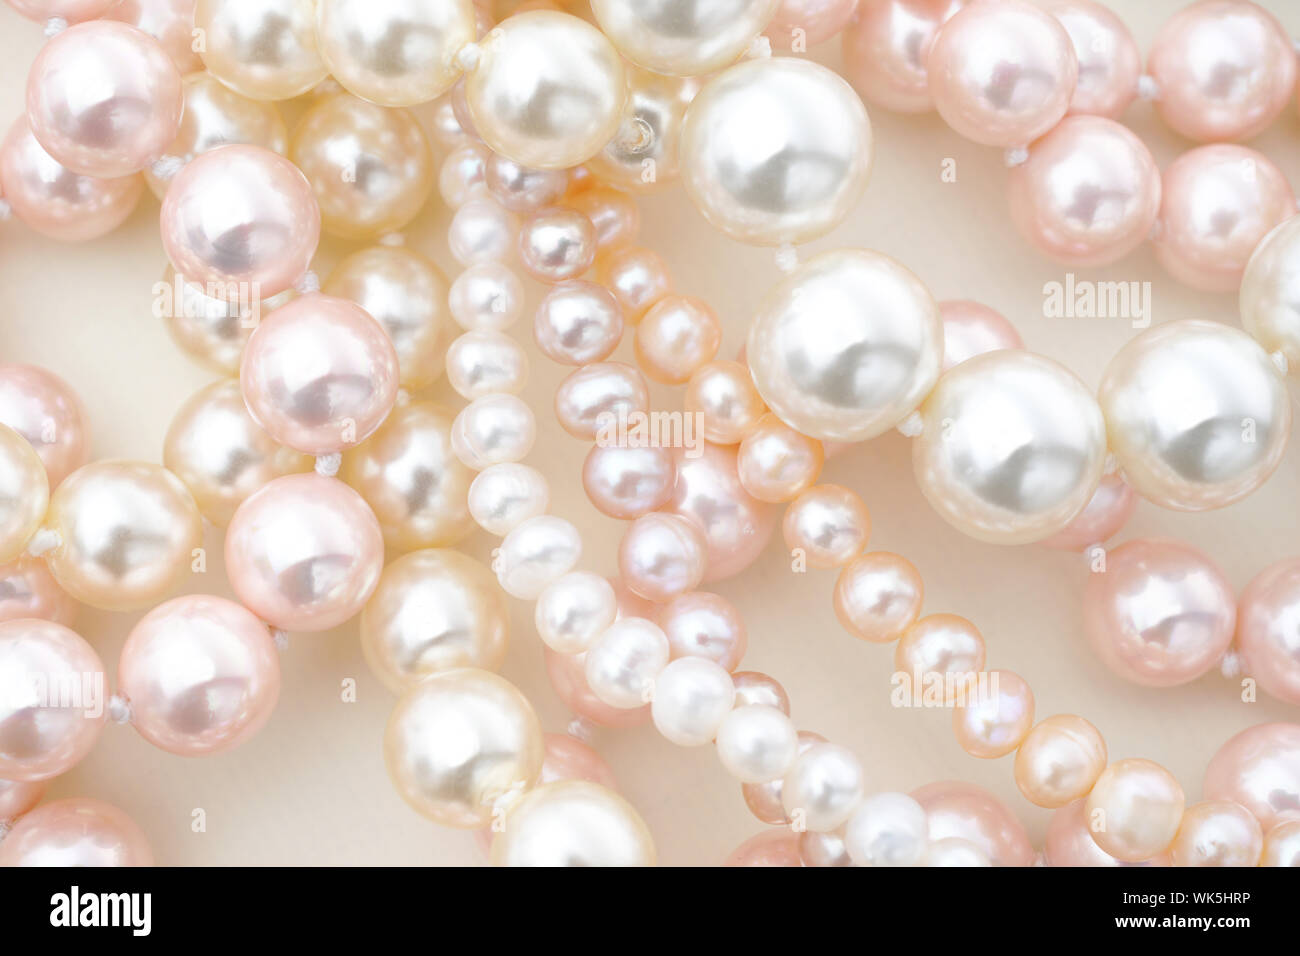 Gioielli di perle immagini e fotografie stock ad alta risoluzione - Alamy